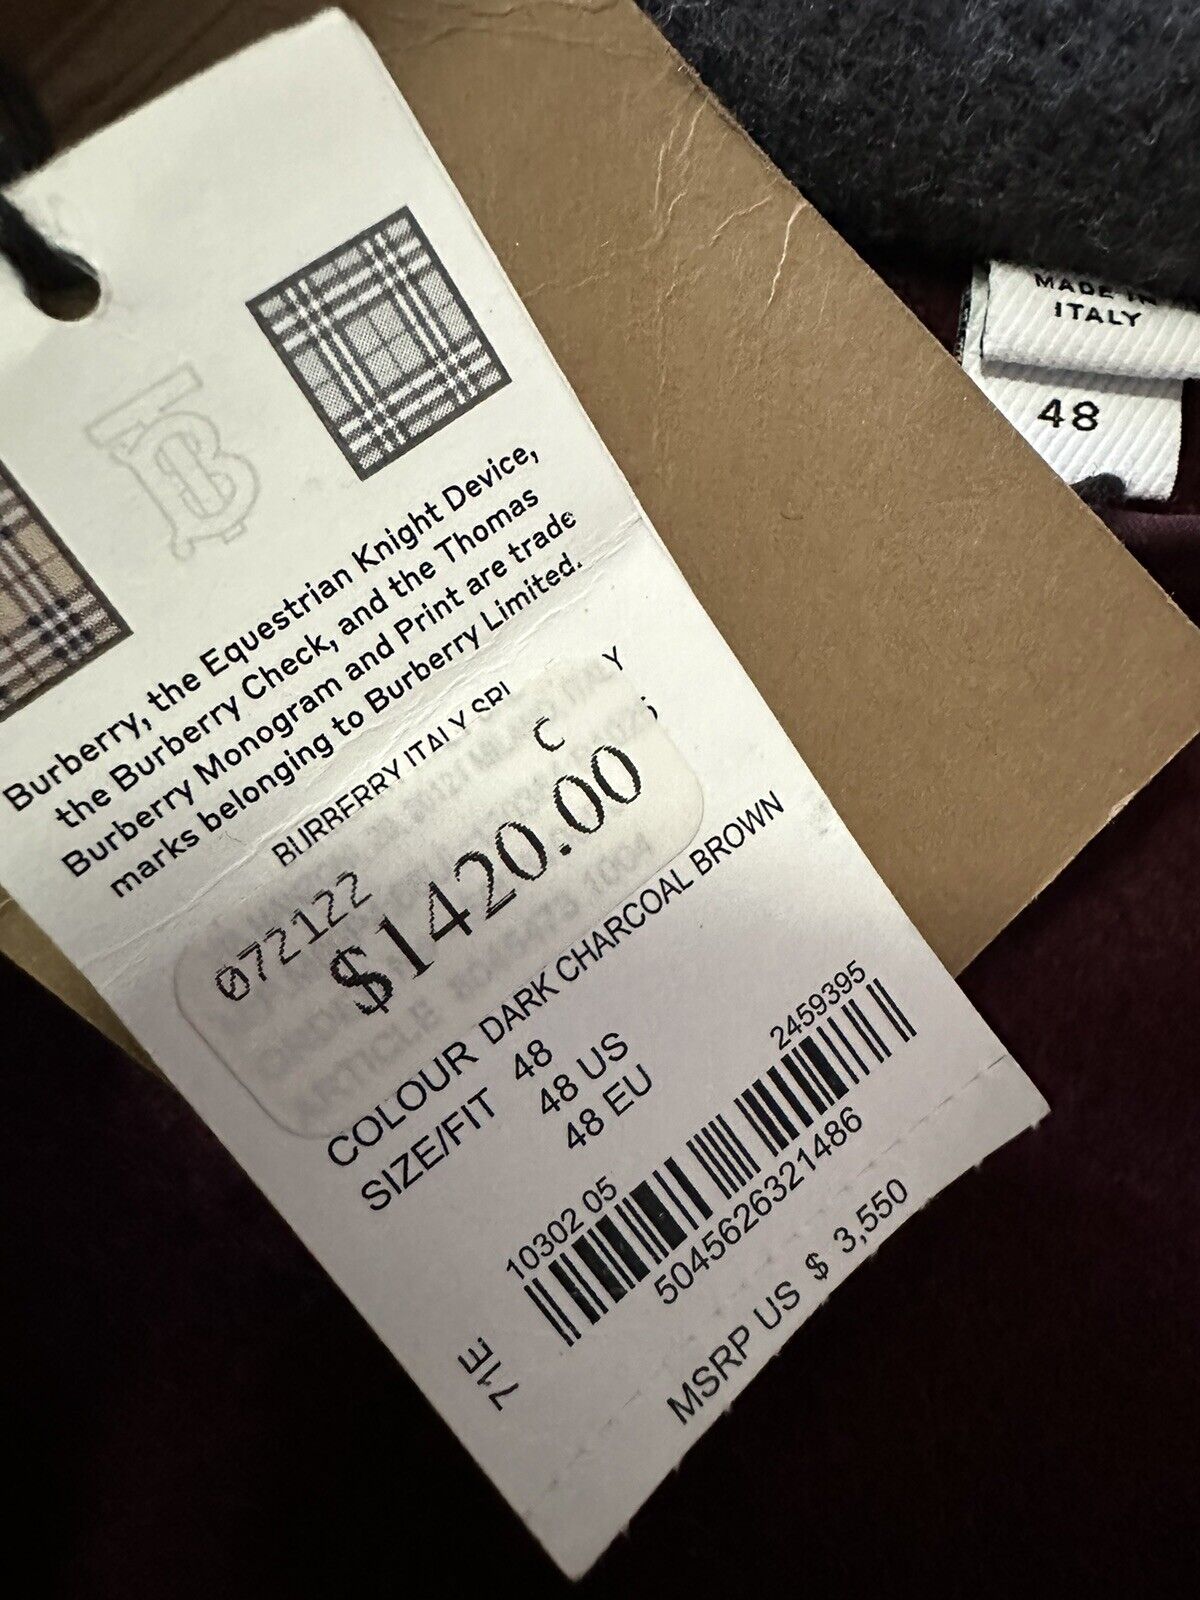 Новое мужское шерстяное пальто оверсайз с капюшоном Burberry за 3550 долларов DARK CHARCOAL 38 US/48 EU